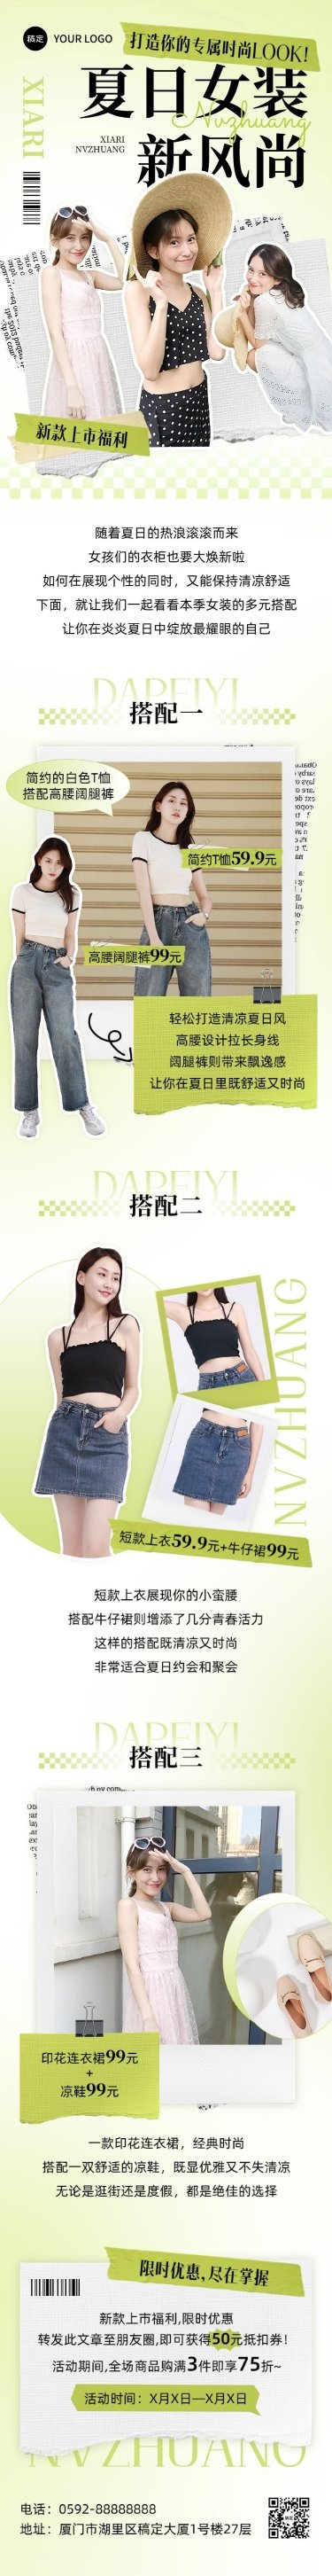 夏季女装营销宣传微信公众号文章长图